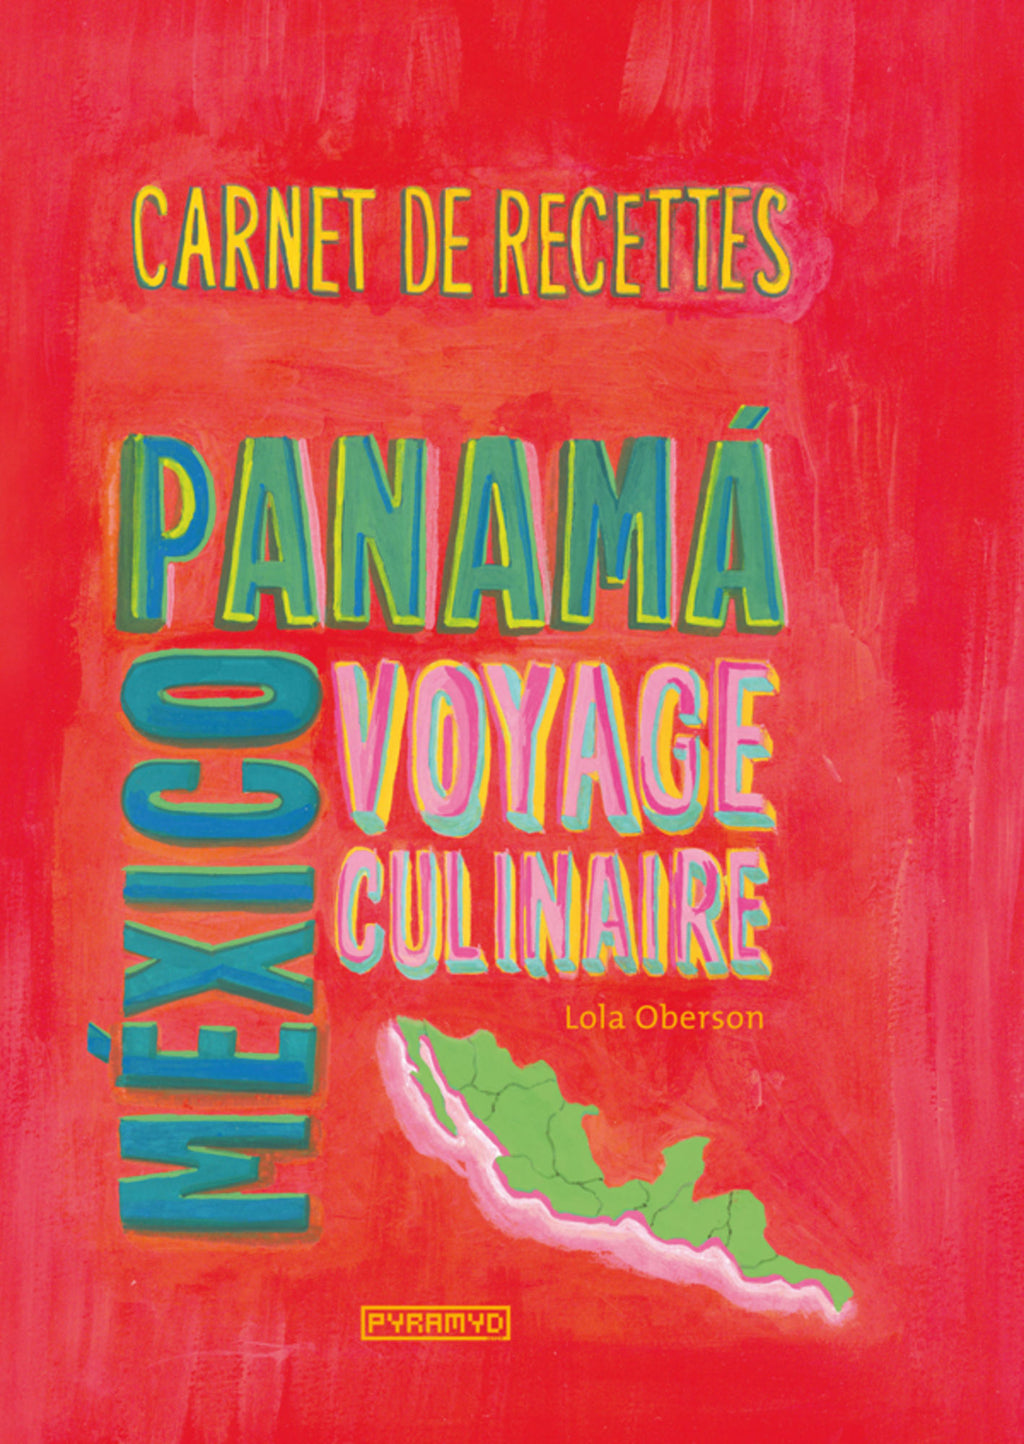 Carnet de recettes de Mexico au Panama